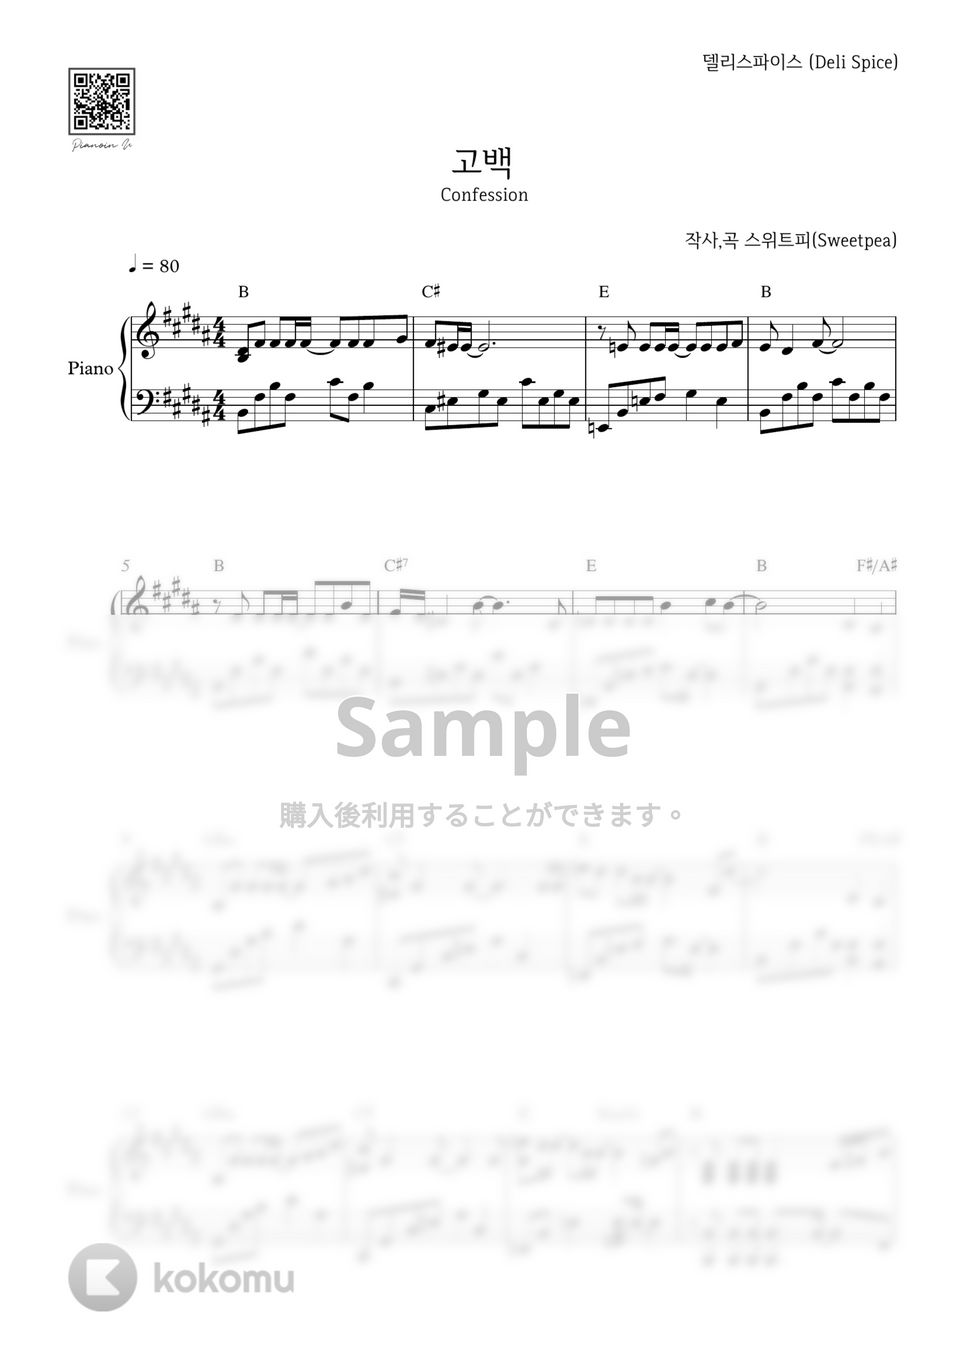 Deli Spice - 告白(Confession) by PIANOiNU